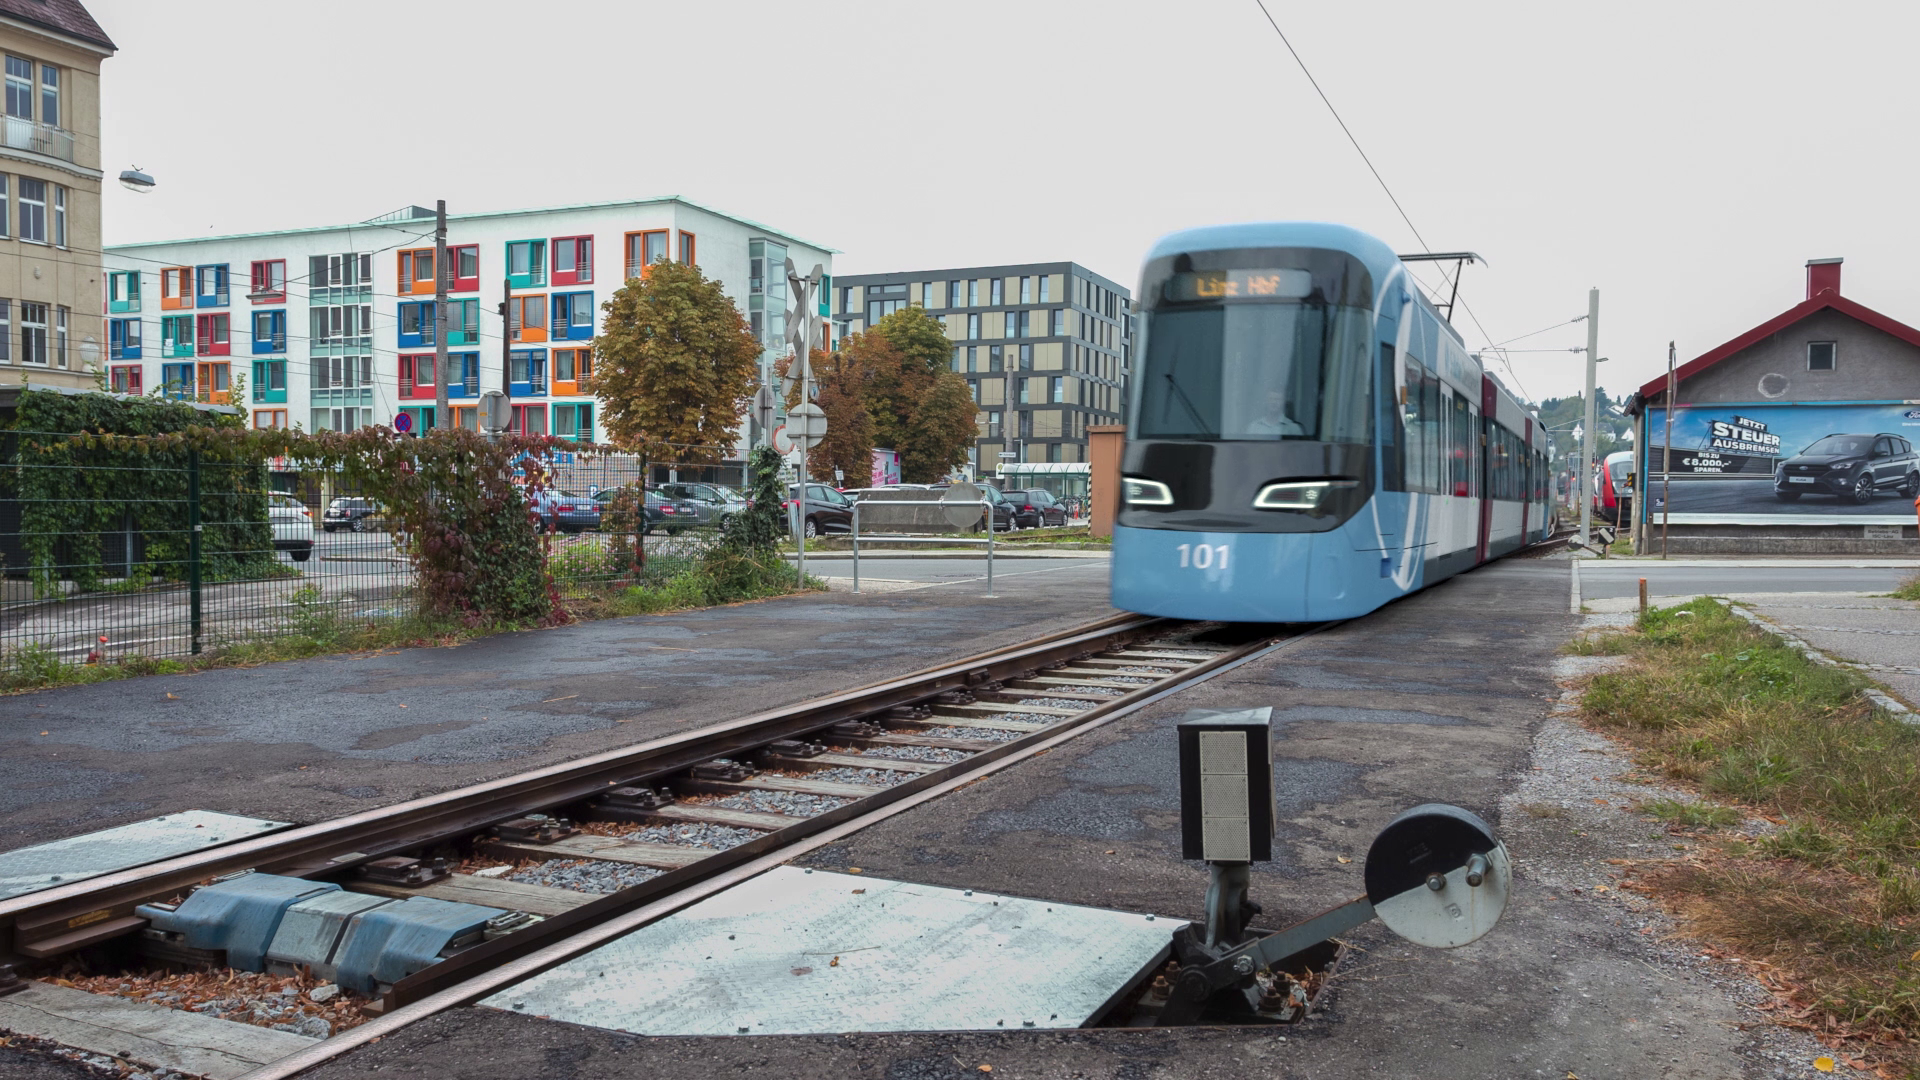 The new light rail will also run through Linz-Urfahr, as this visualization shows. (Bild: Schiene OÖ)